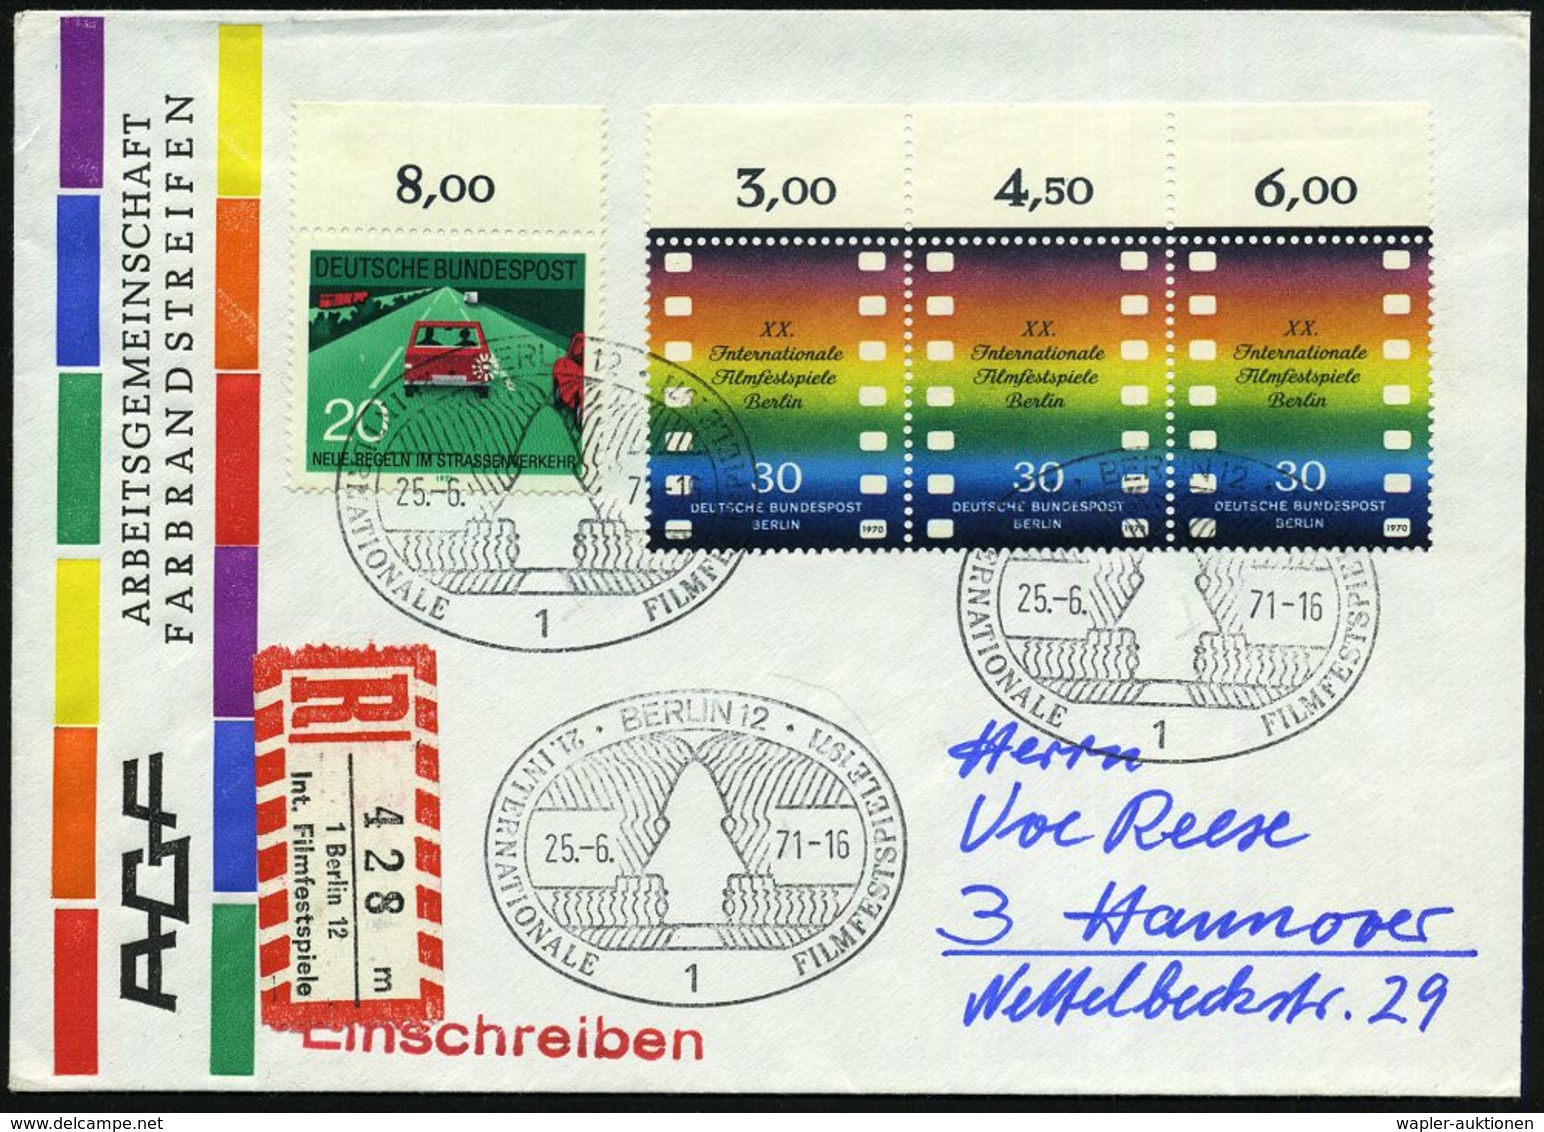 FILMFESTSPIELE / FILMKONGRESSE : 1 BERLIN 12/ 21.INTERNAT.FILMFESTSPIELE 1971 (25.6.) SSt Auf Rand-3er-Streifen 30 Pf. F - Cinéma